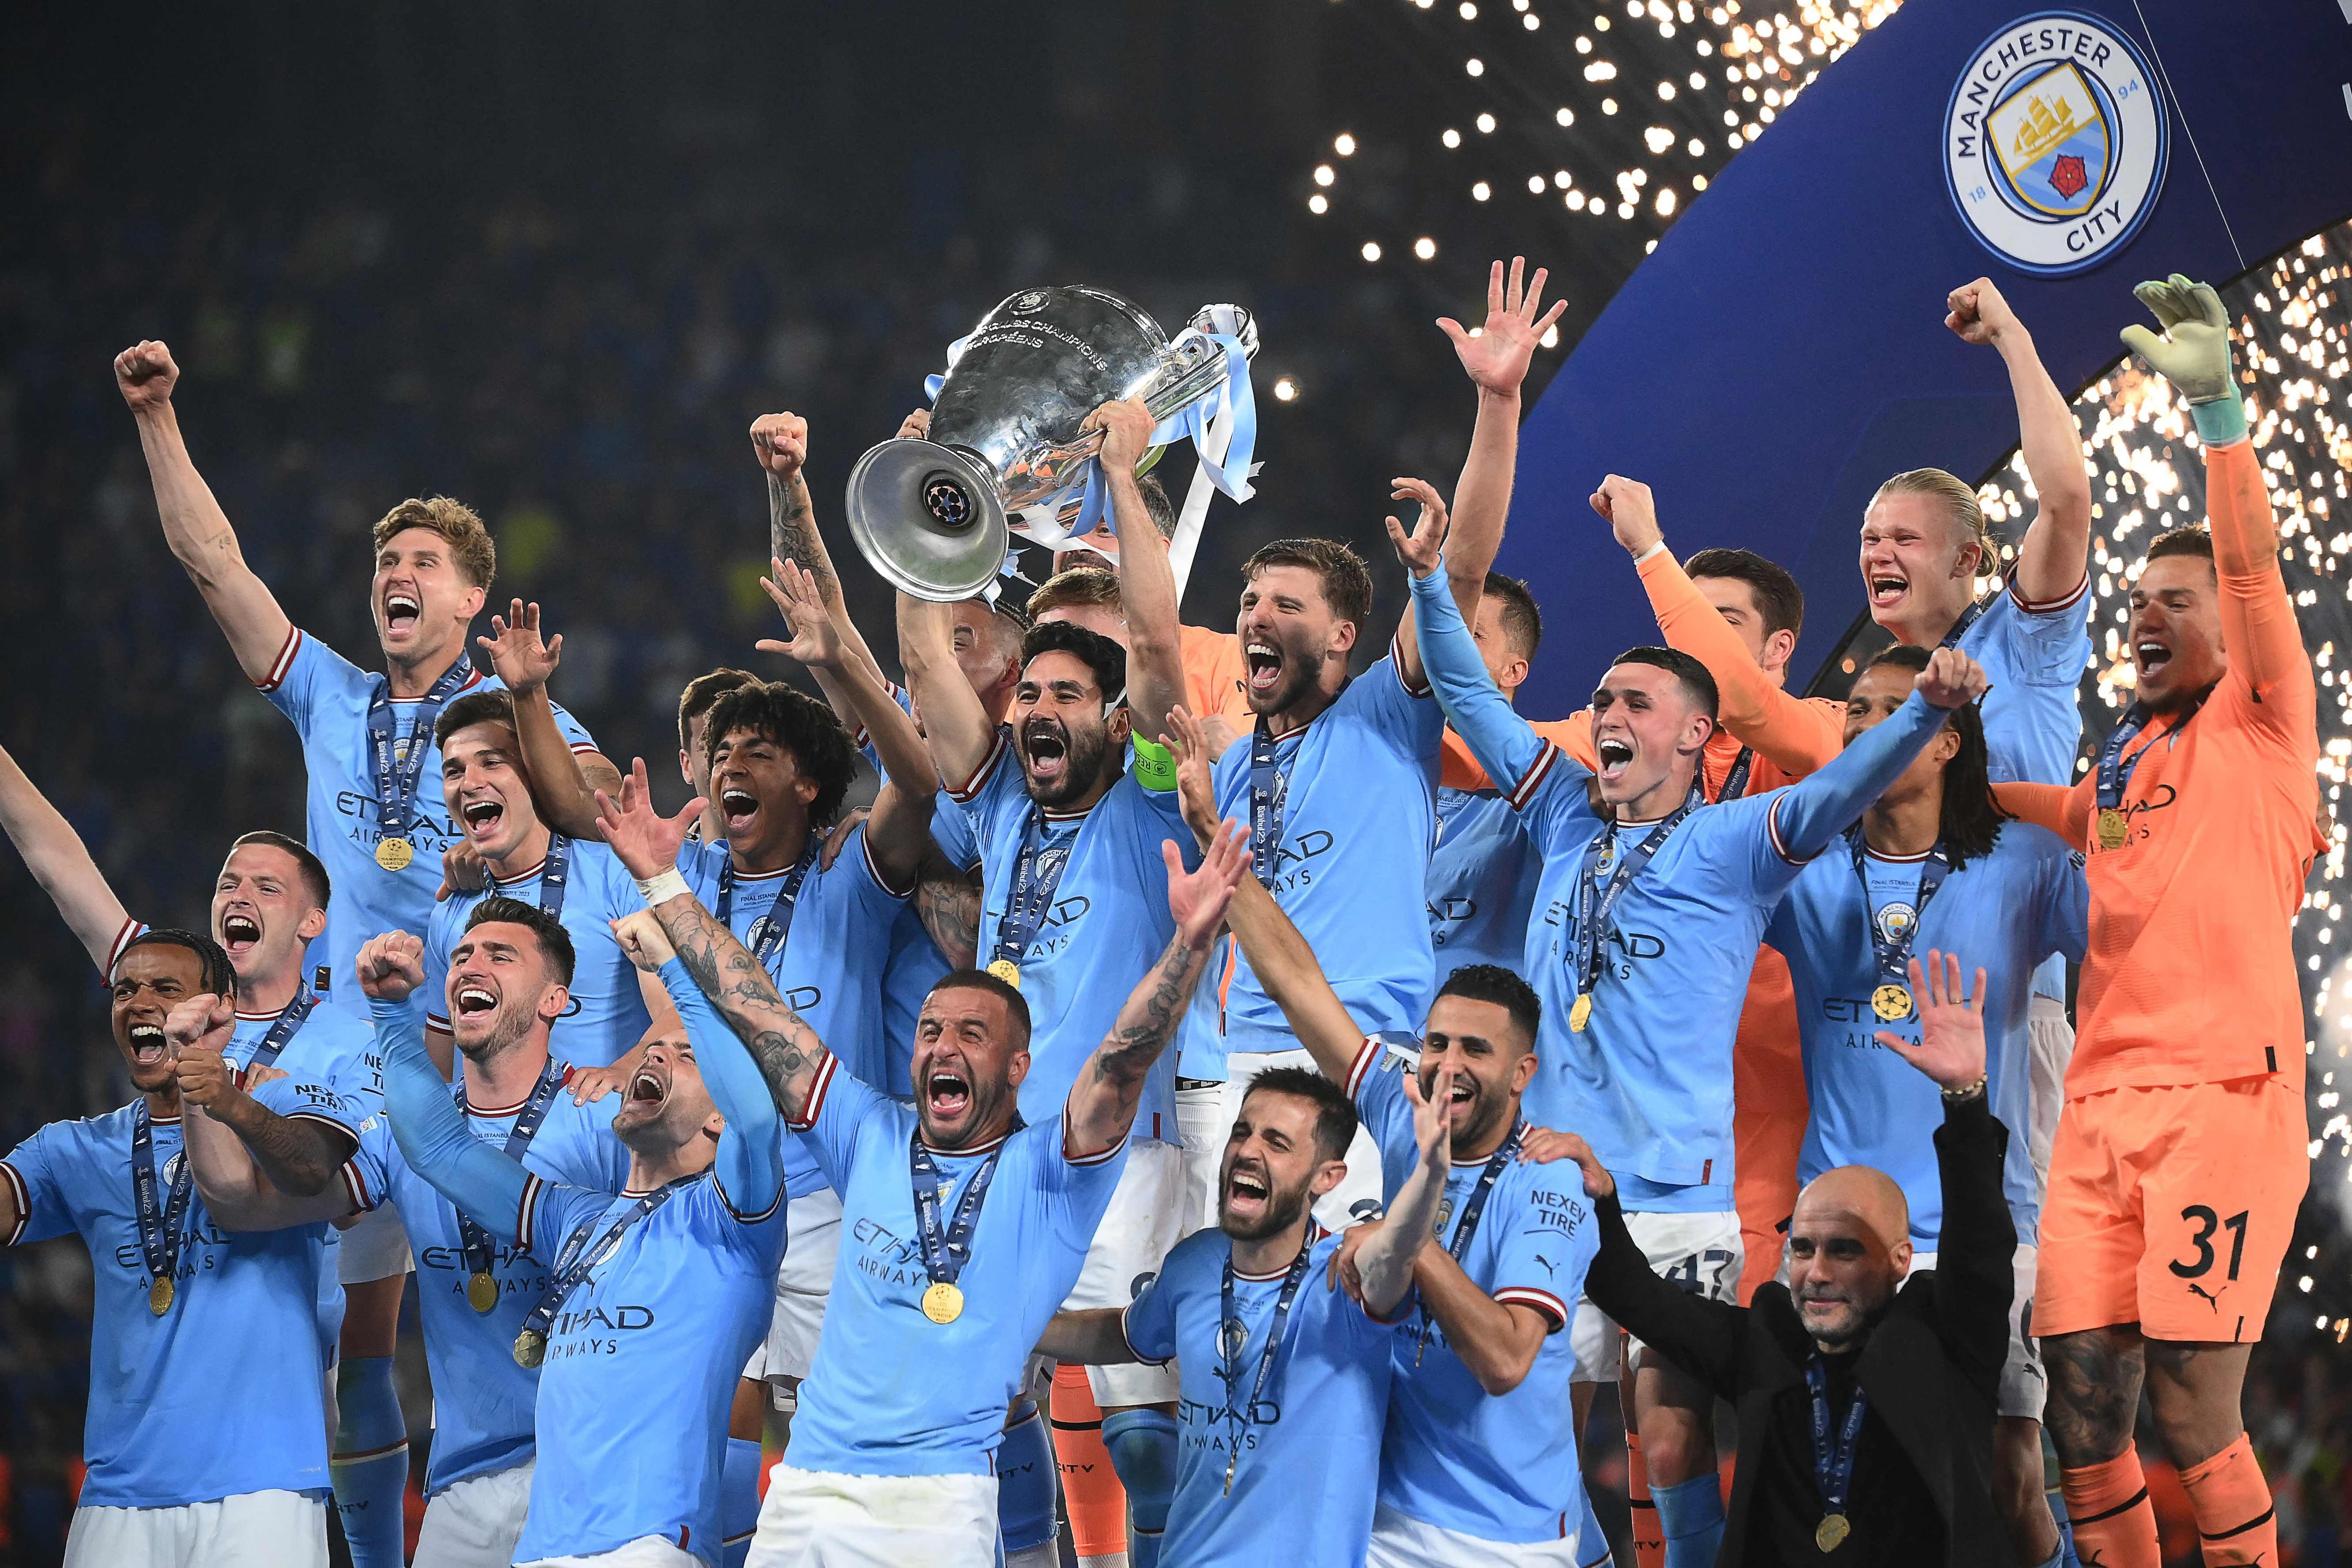 Vea al Manchester City celebrar su Champions cantando ‘Wonderwall’, de Oasis